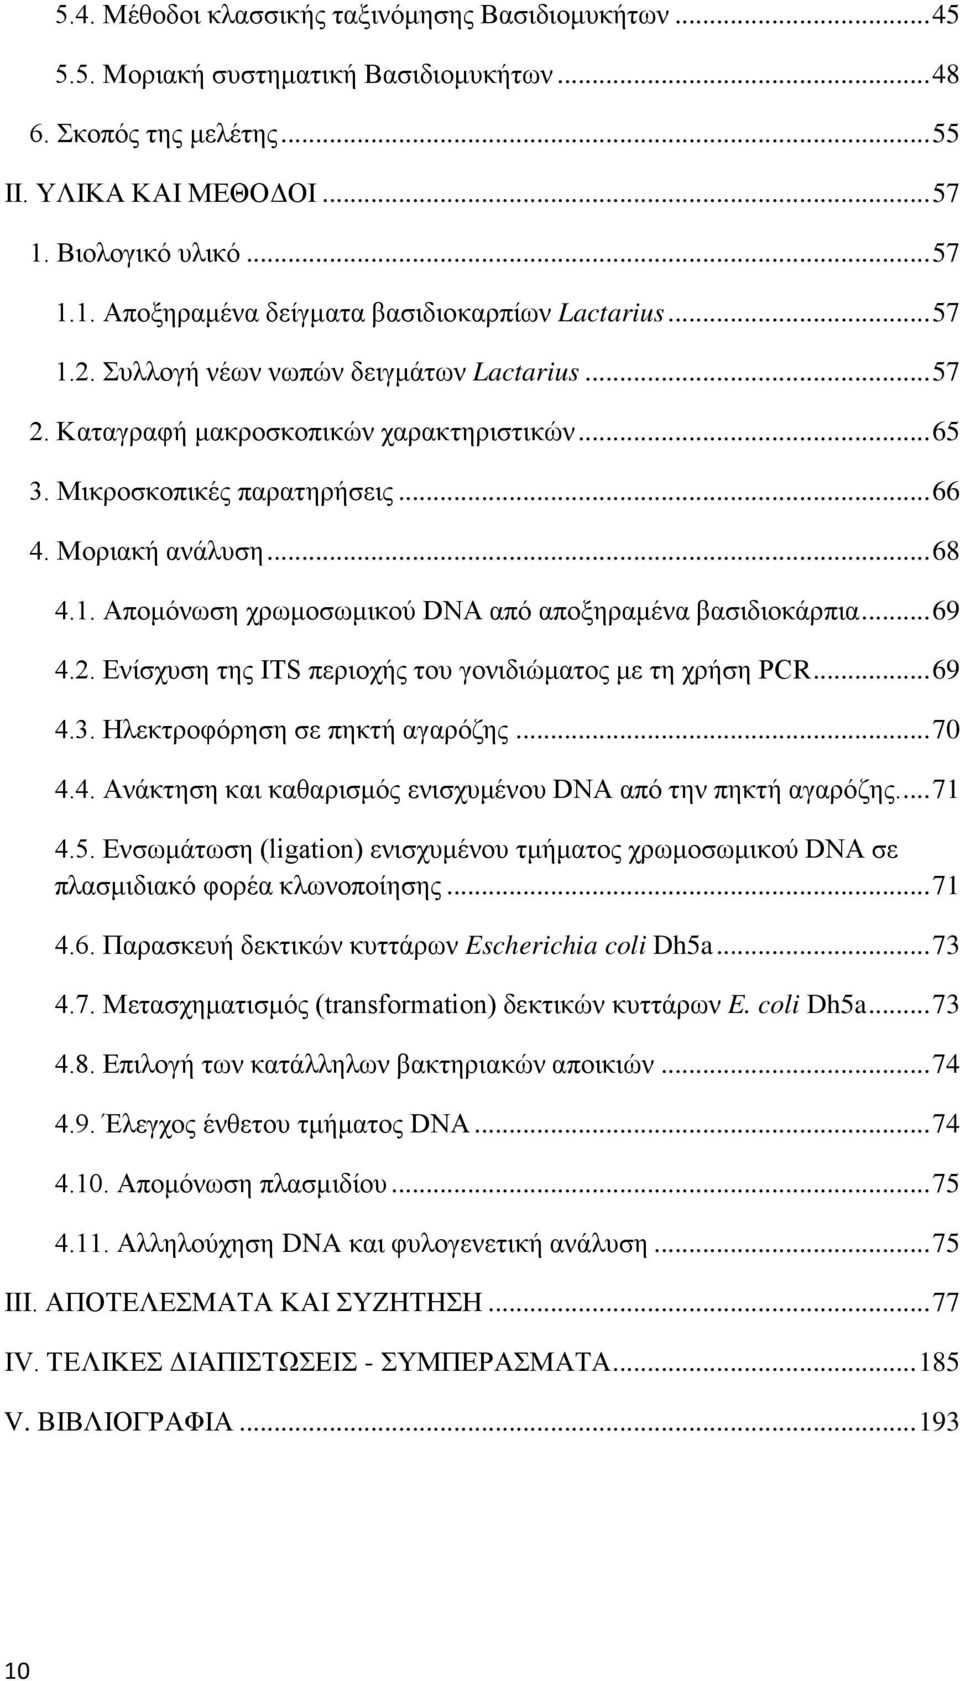 Μικροσκοπικές παρατηρήσεις... 66 4. Μοριακή ανάλυση... 68 4.1. Απομόνωση χρωμοσωμικού DNA από αποξηραμένα βασιδιοκάρπια... 69 4.2. Ενίσχυση της ITS περιοχής του γονιδιώματος με τη χρήση PCR... 69 4.3.